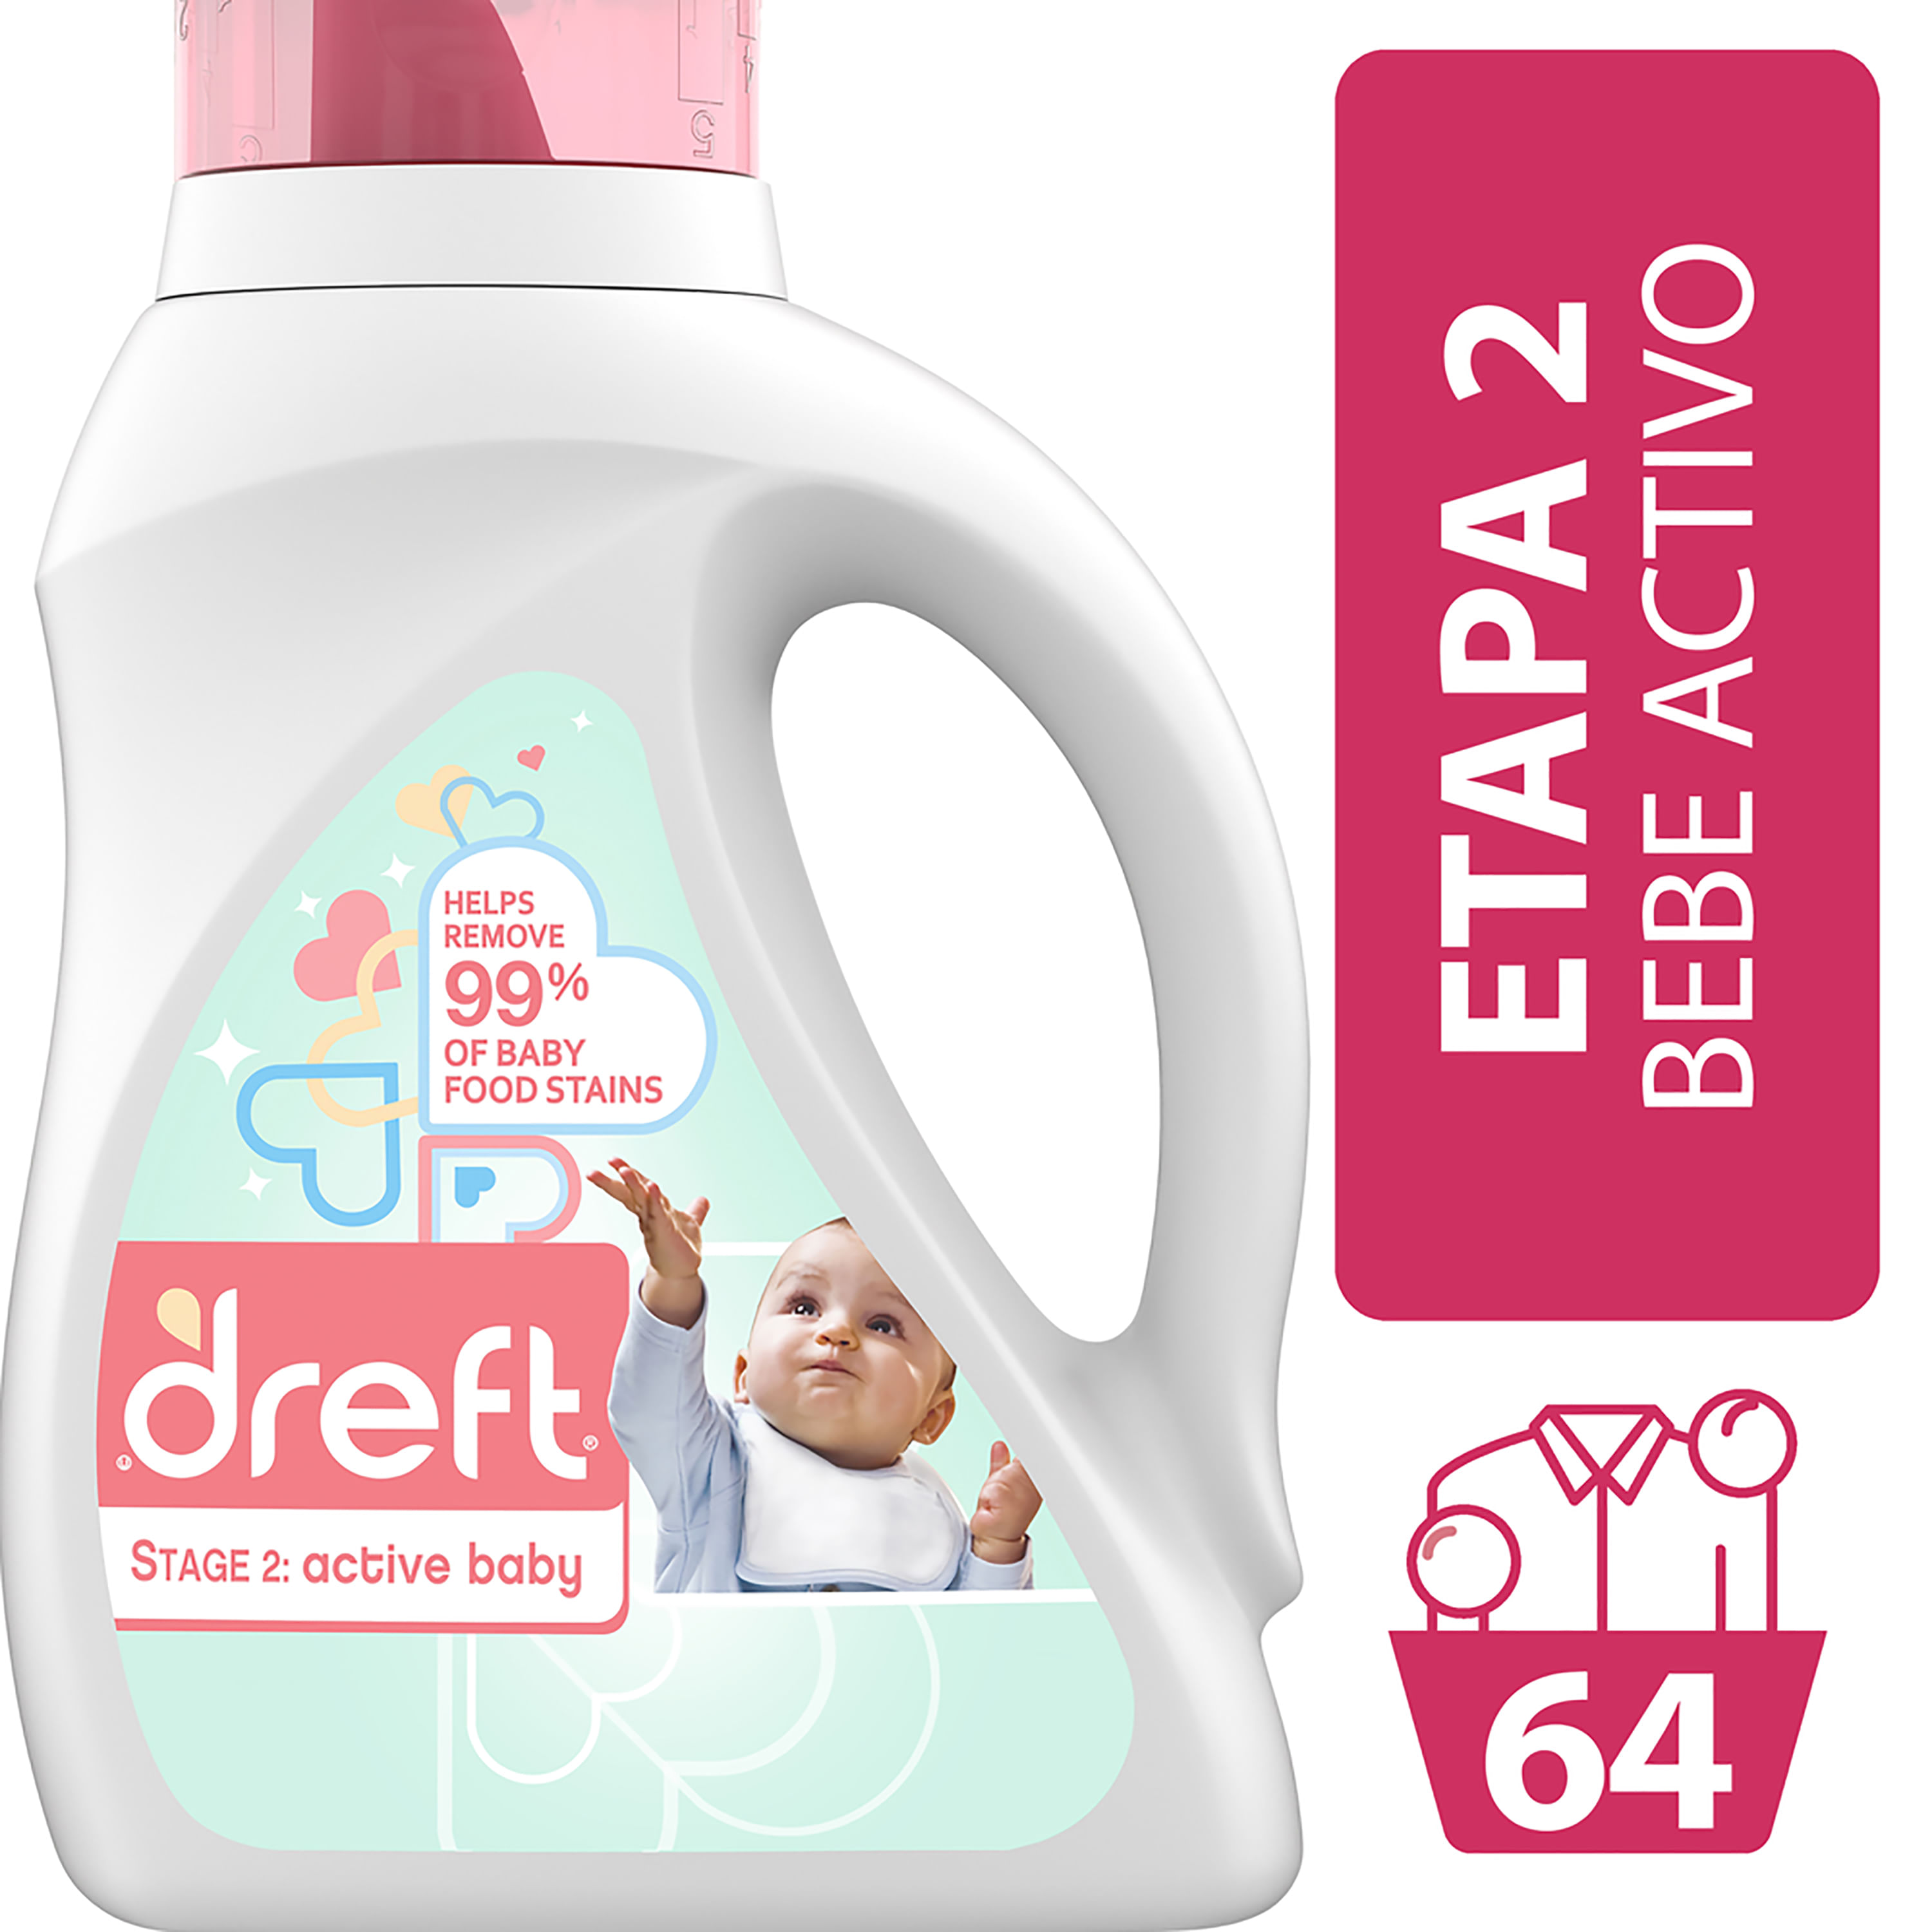 Dreft Stage 2: Detergente Baby Está Especialmente Pensando En El Desarrollo De Su Bebé. Es Por Eso Que Ayuda Eliminar El 99% De